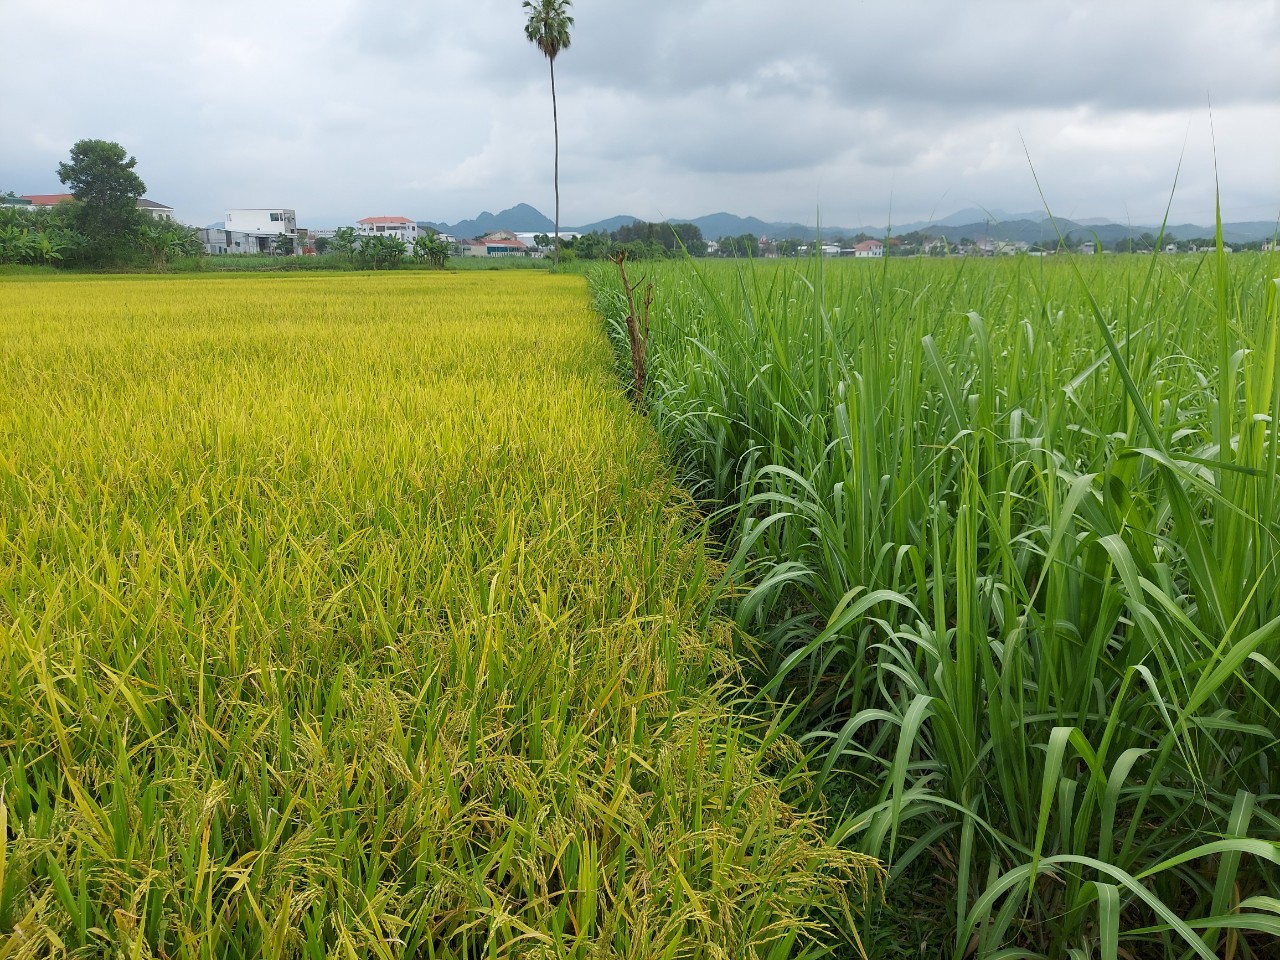 Chuyển đổi cơ cấu cây trồng trên đất trồng lúa, kết quả và đề xuất giải pháp